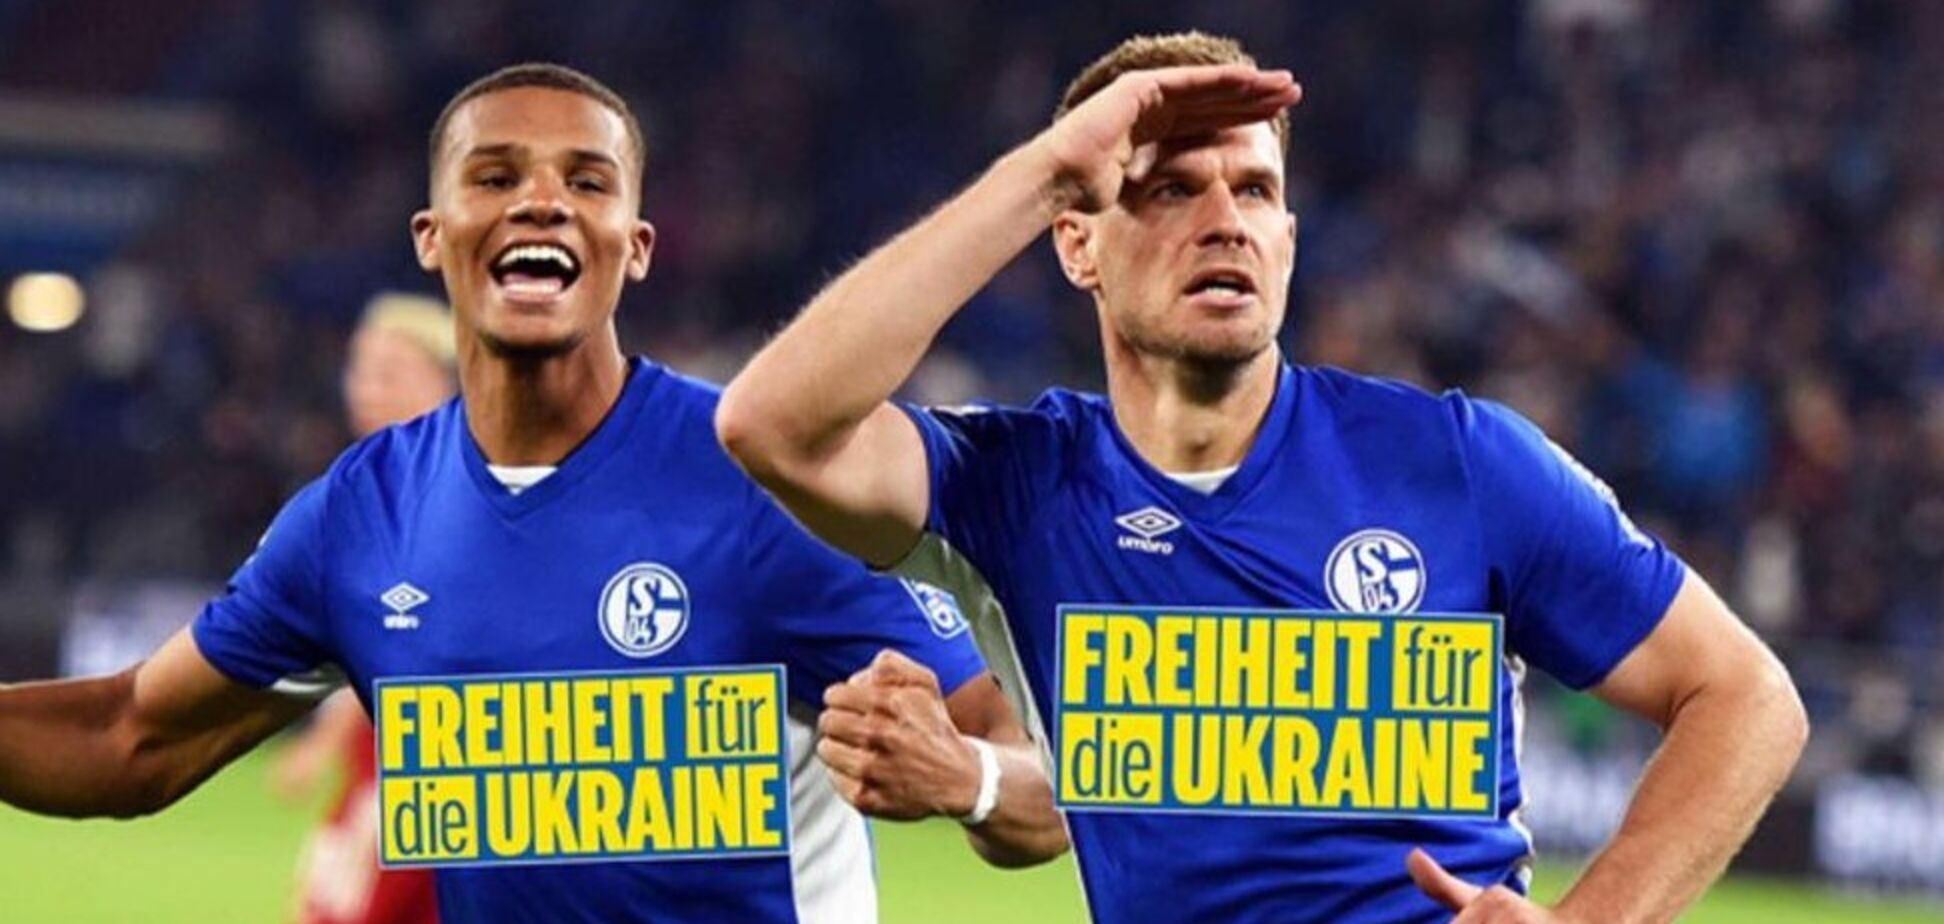 Немецкое СМИ 'заклеило' лого 'Газпрома' на форме команды из-за Украины